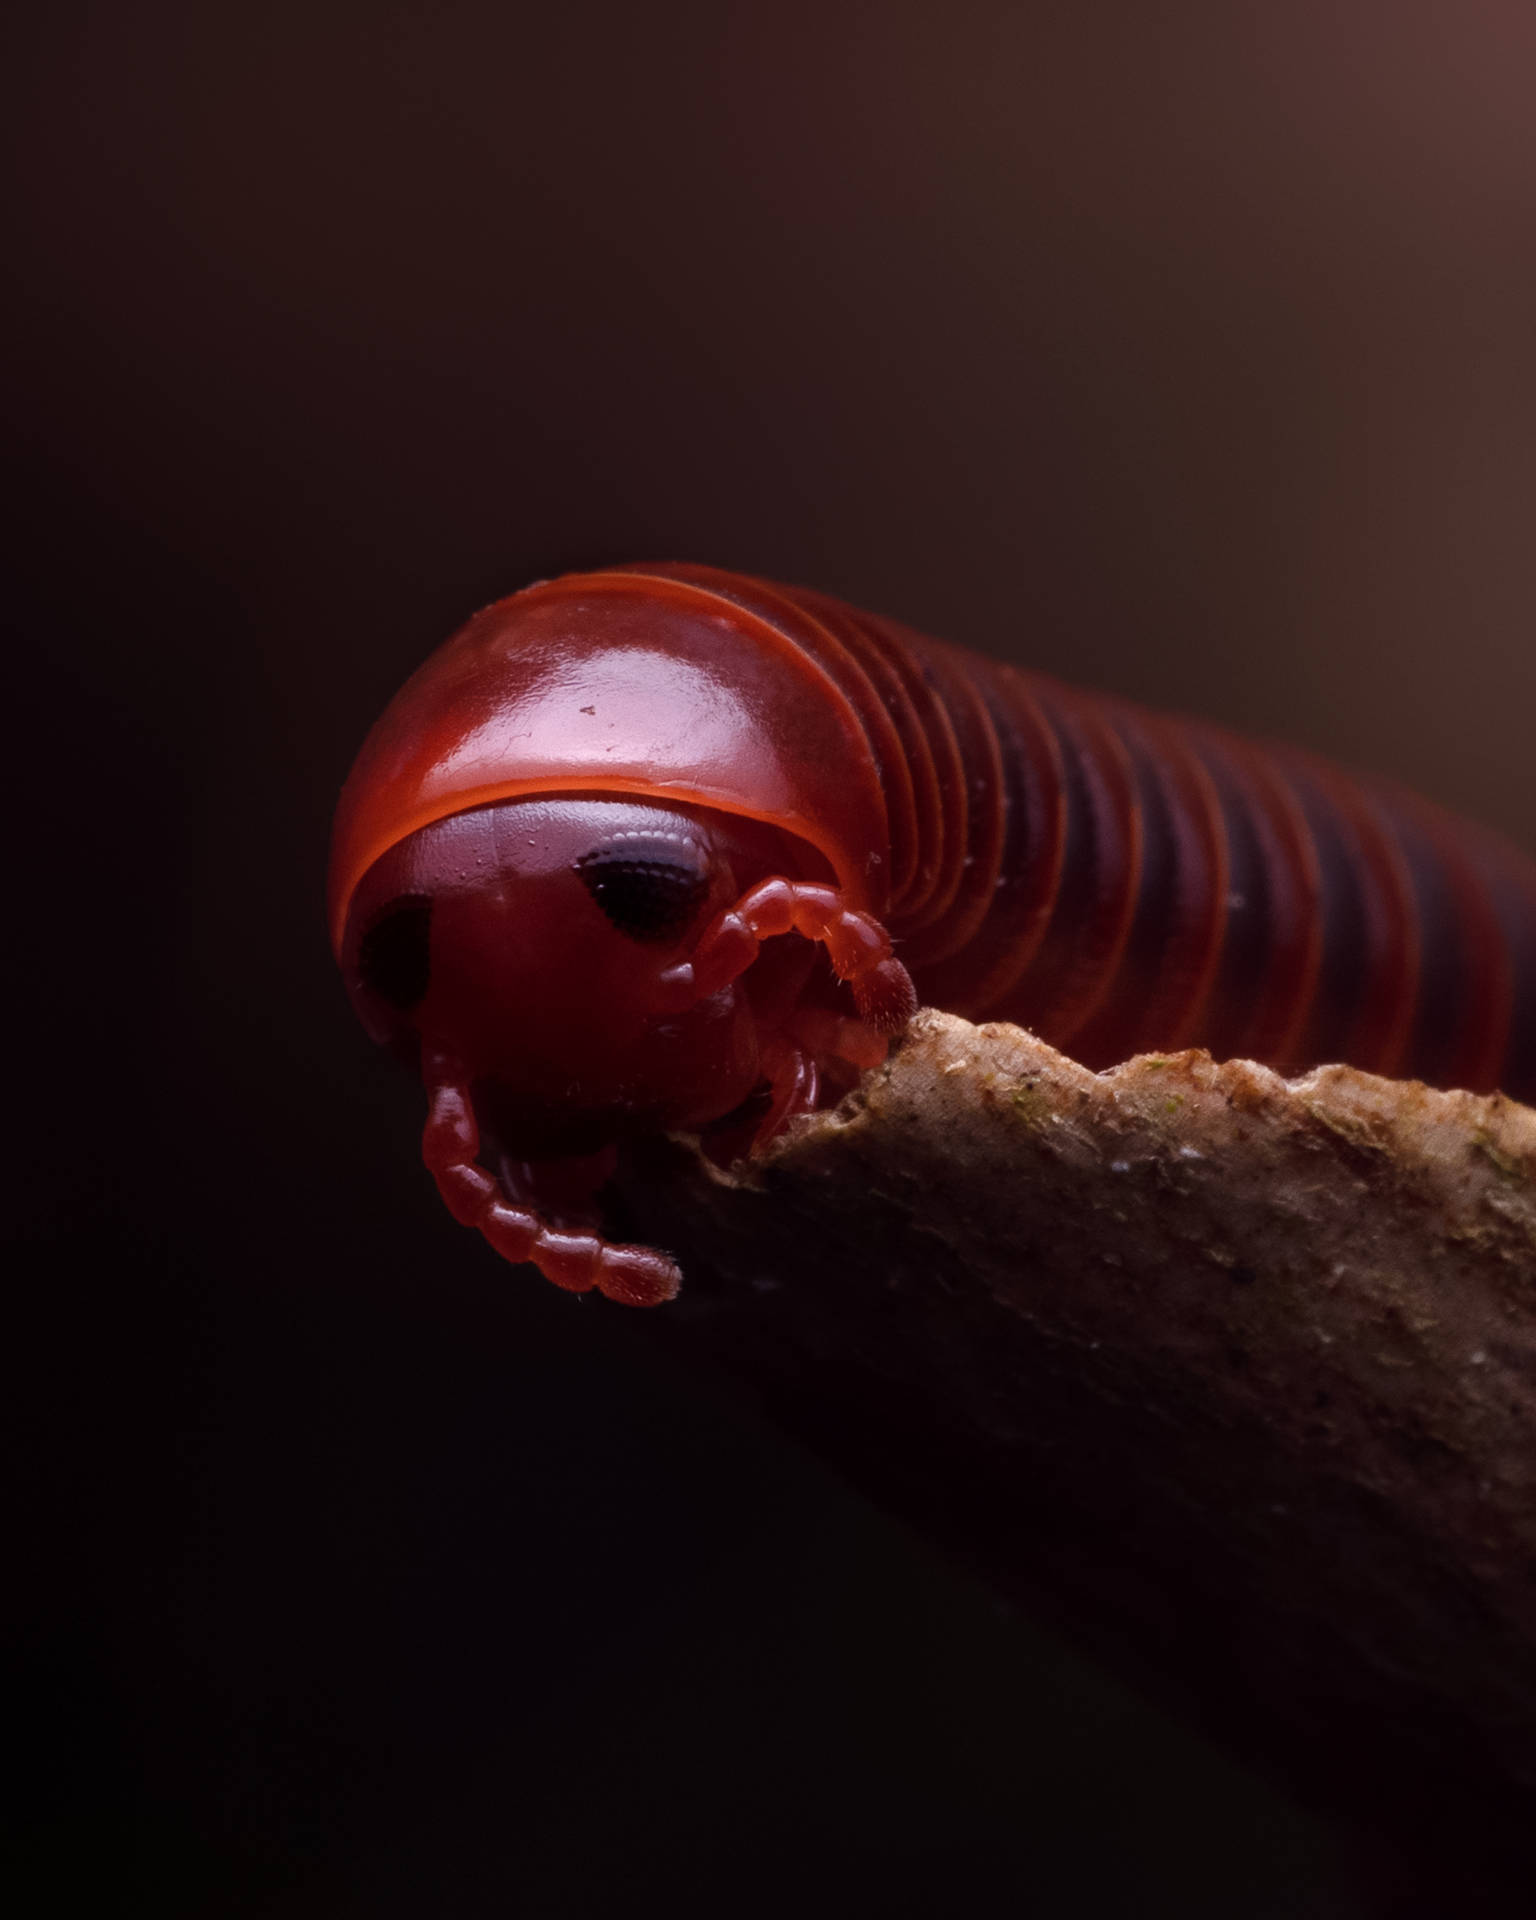 Øjen-til-øje med en Spirostreptus millipede Wallpaper